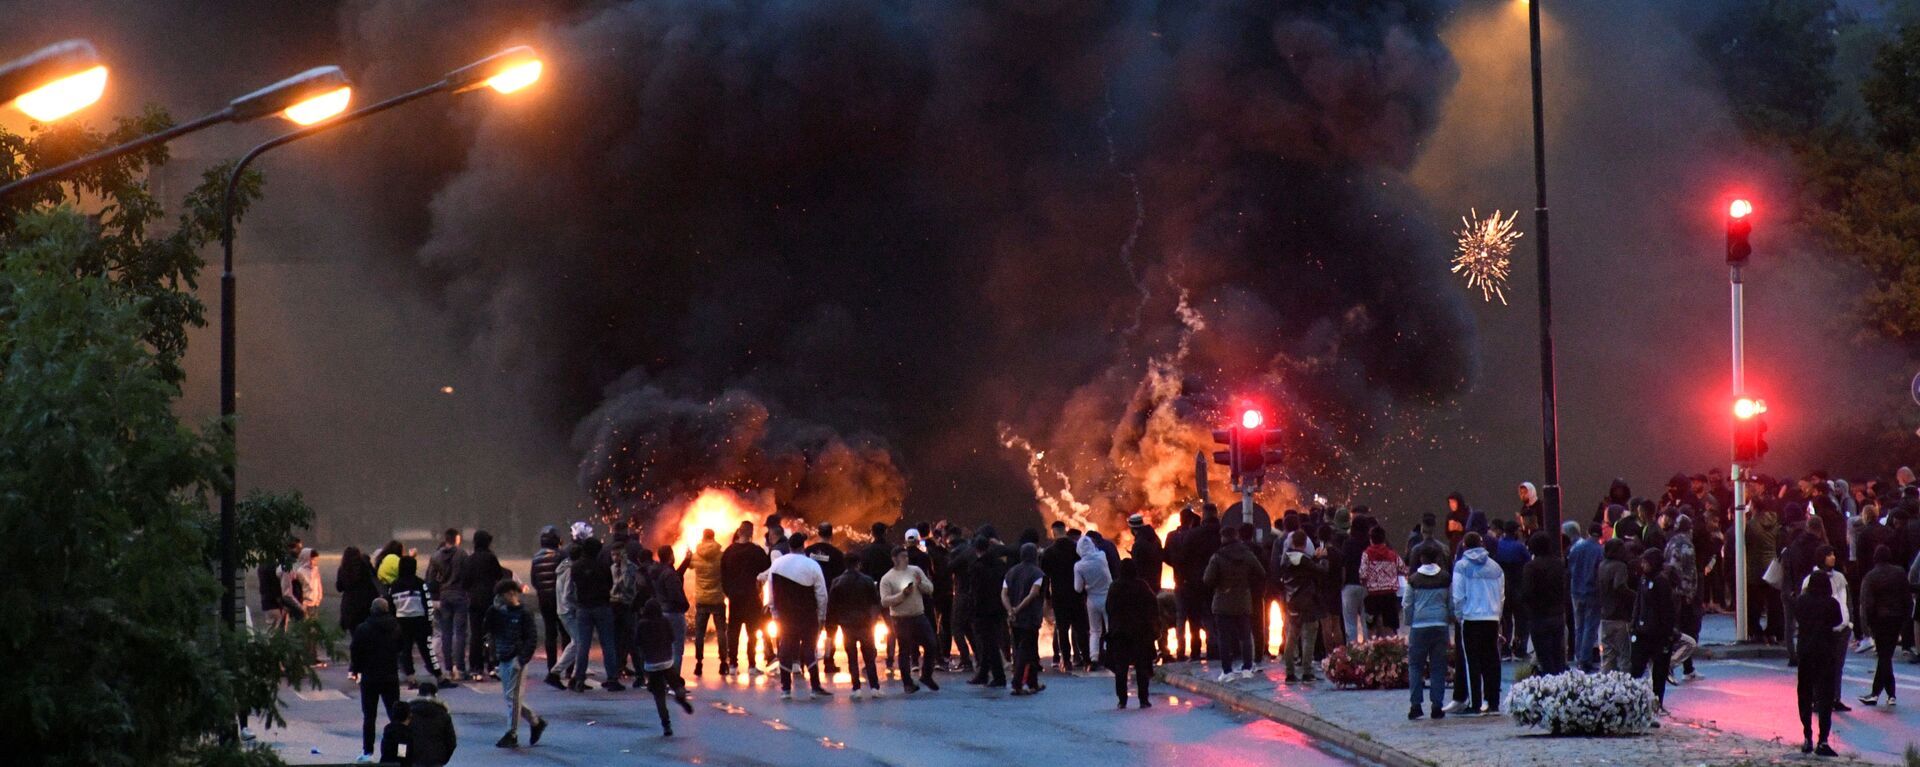 İsveç'in Malmö kentinin Rosengard semtinde göçmenlerin Kuran yakılmasına karşı düzenlediği protesto (28 Ağustos 2020) - Sputnik Türkiye, 1920, 31.08.2020